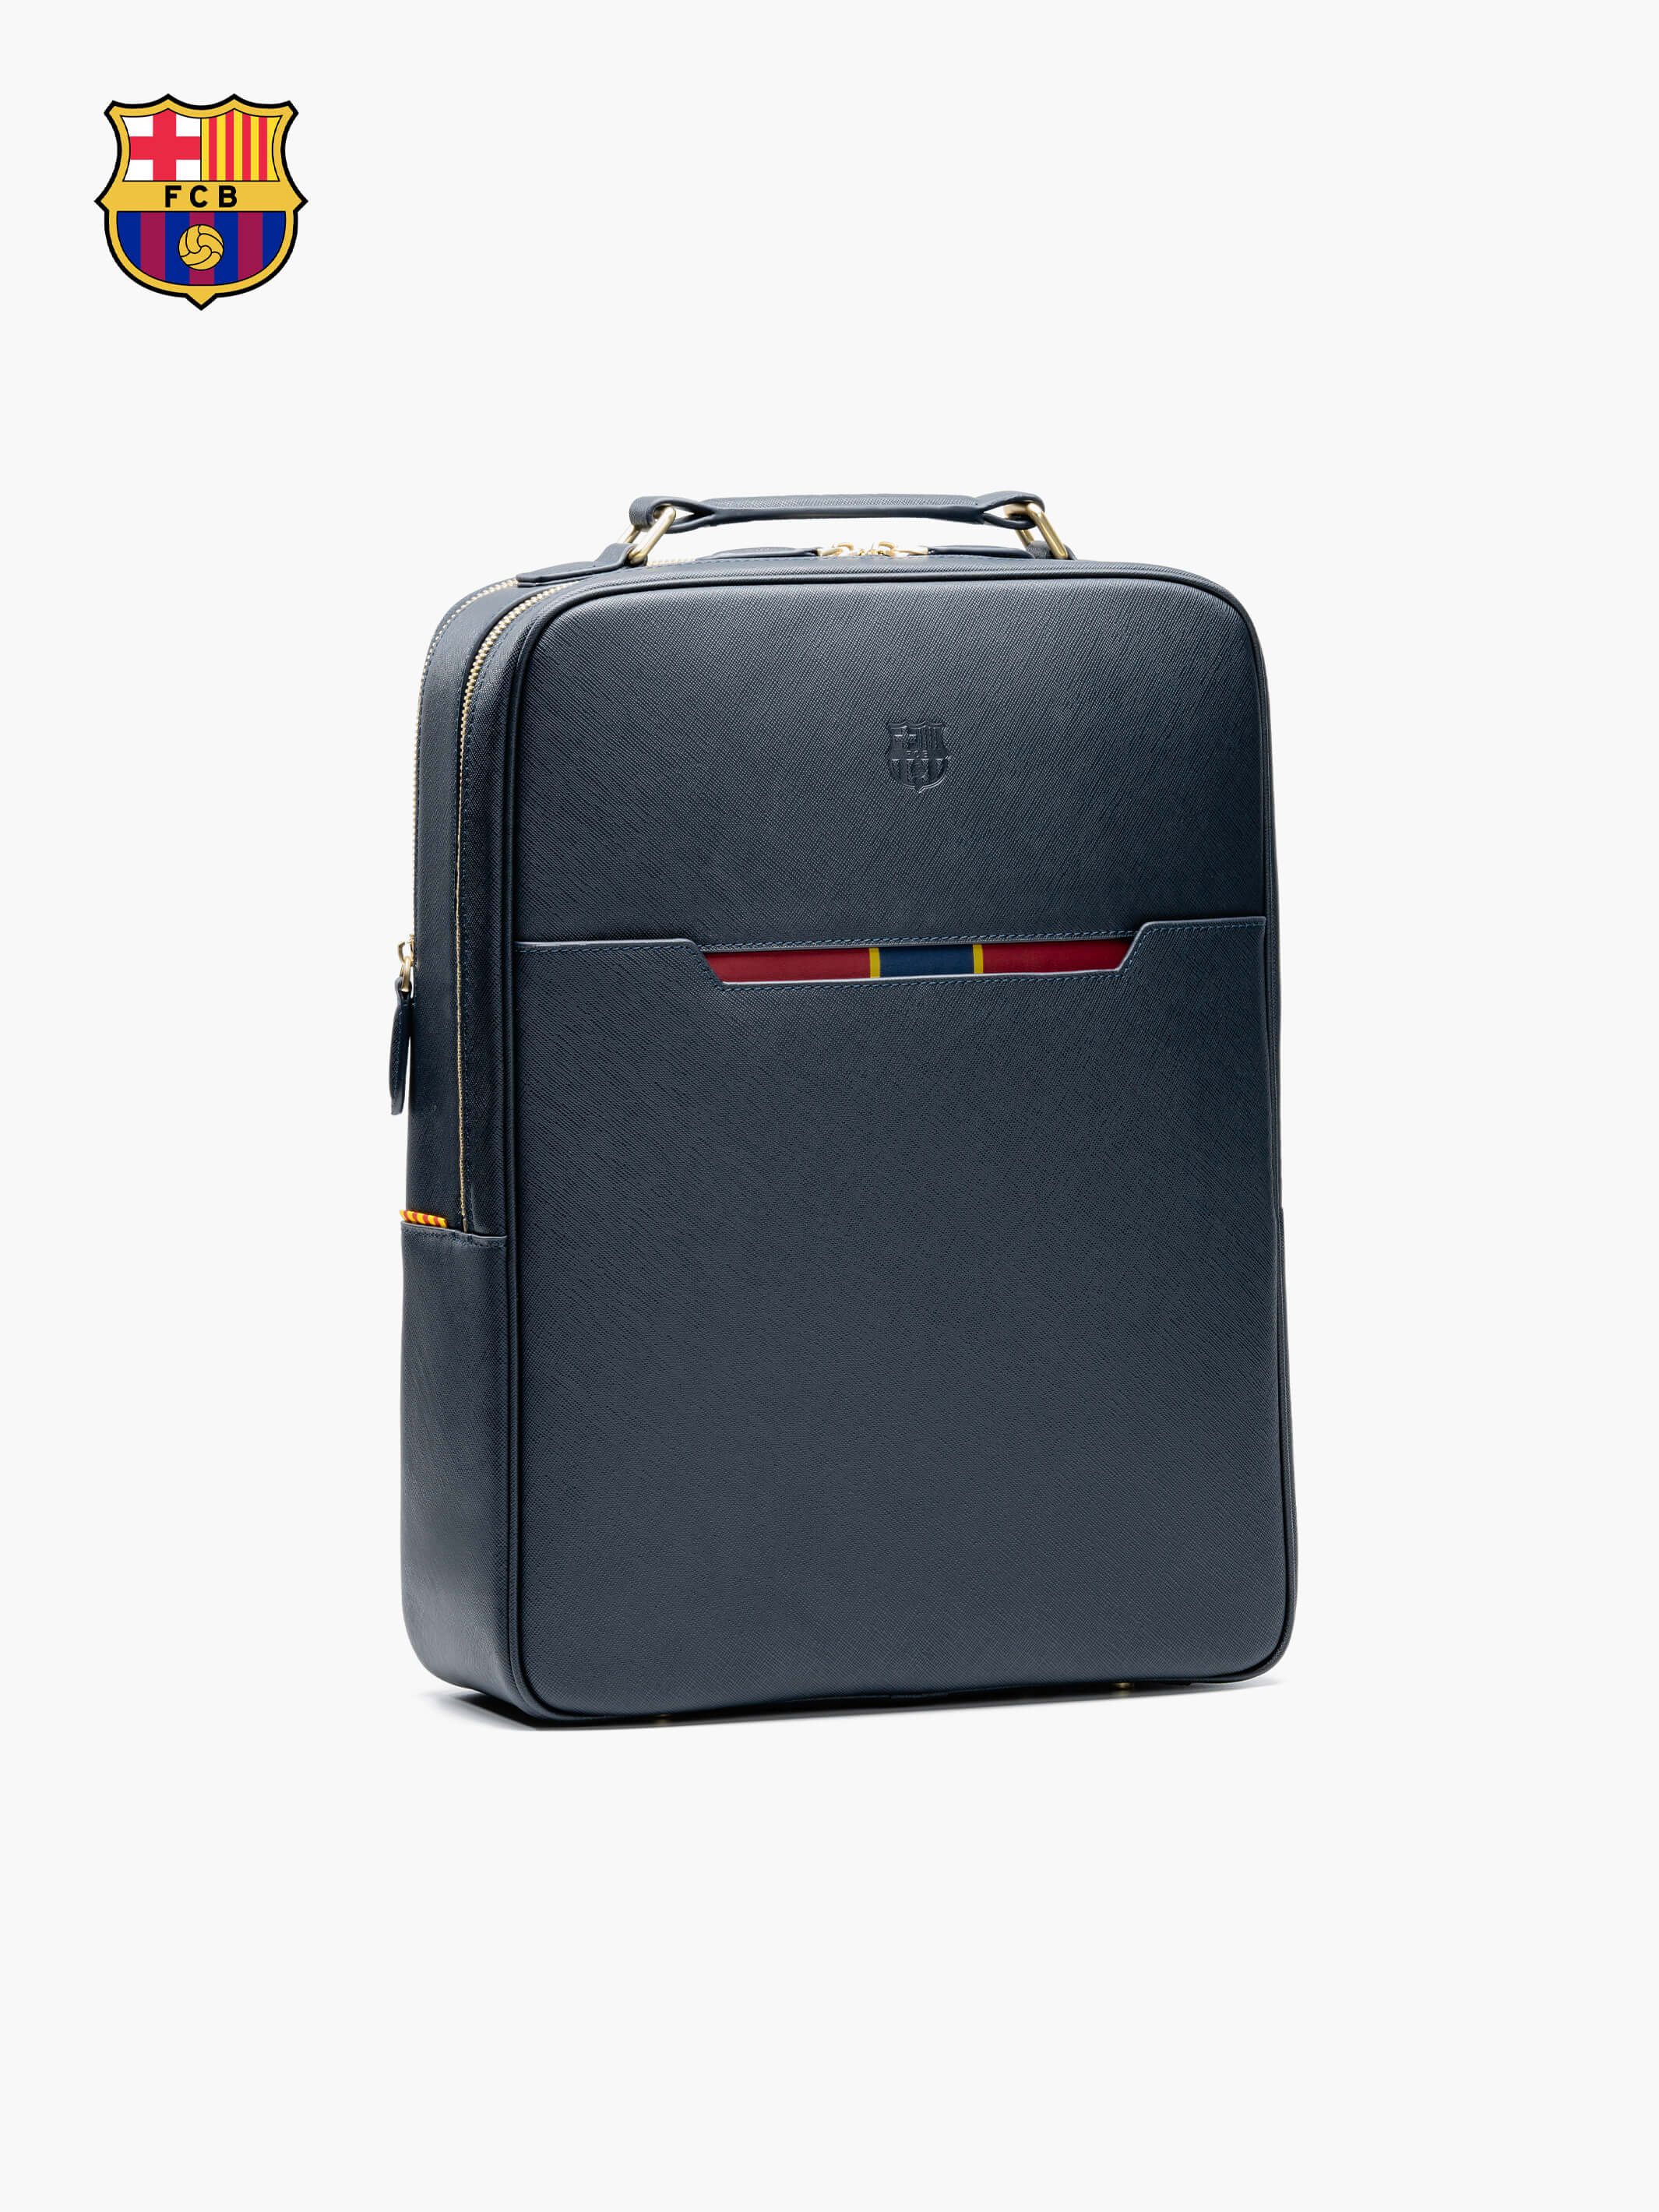 Executive Weekender Bag Set in Black  Black leather backpack, Leather  backpack, Luxury luggage sets